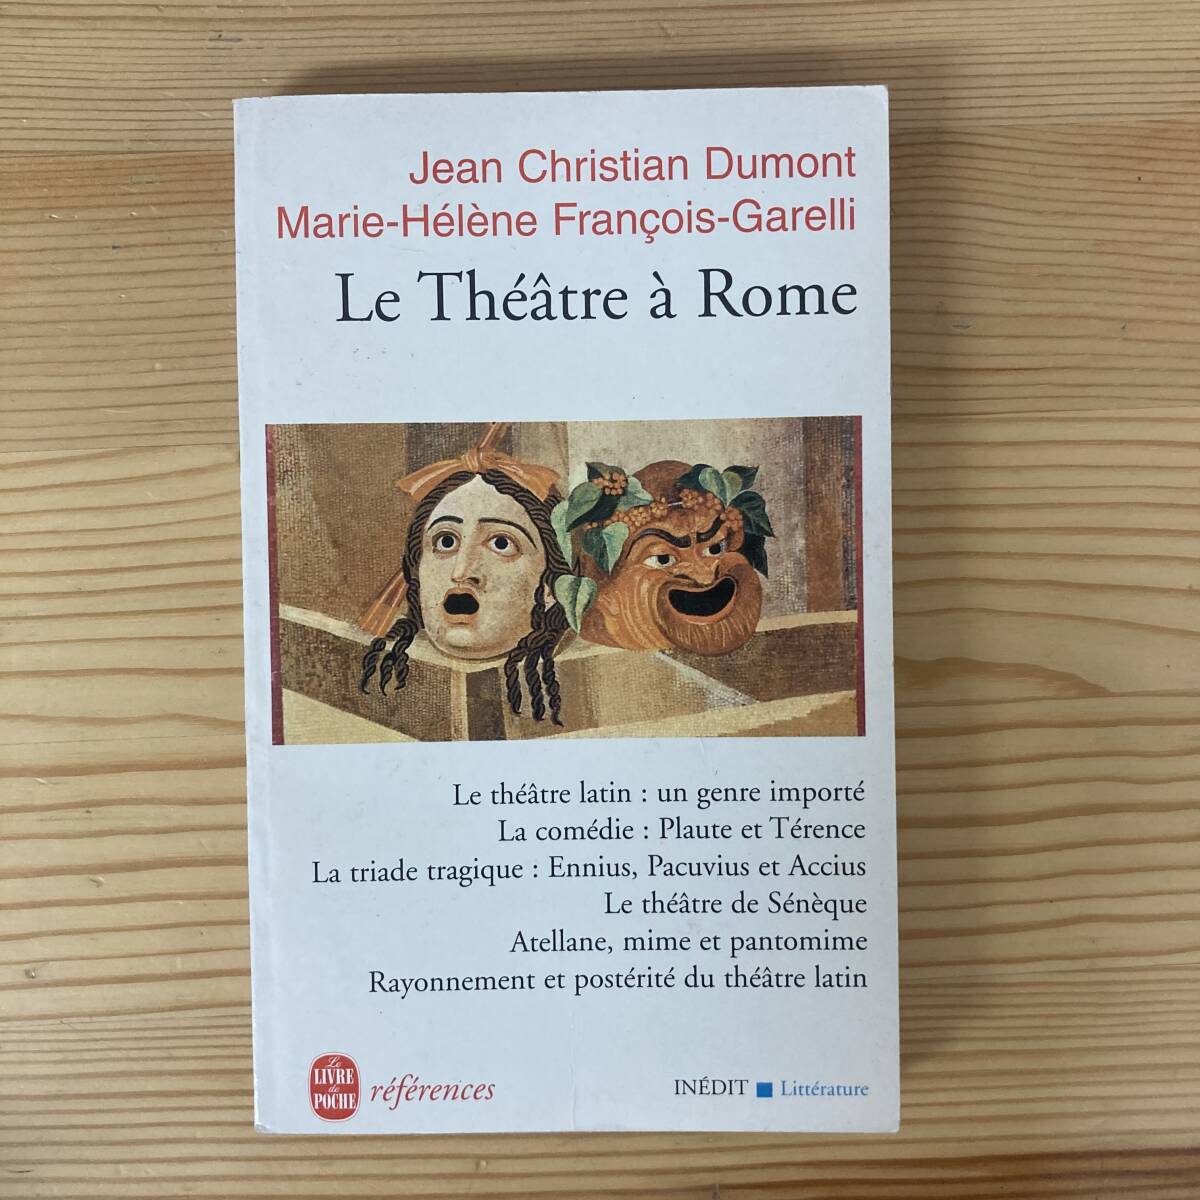 【仏語洋書】Le Theatre a Rome / Jean Christian Dumont, Marie-Helene Francois-Garelli（著）【古代ローマ 演劇】_画像1